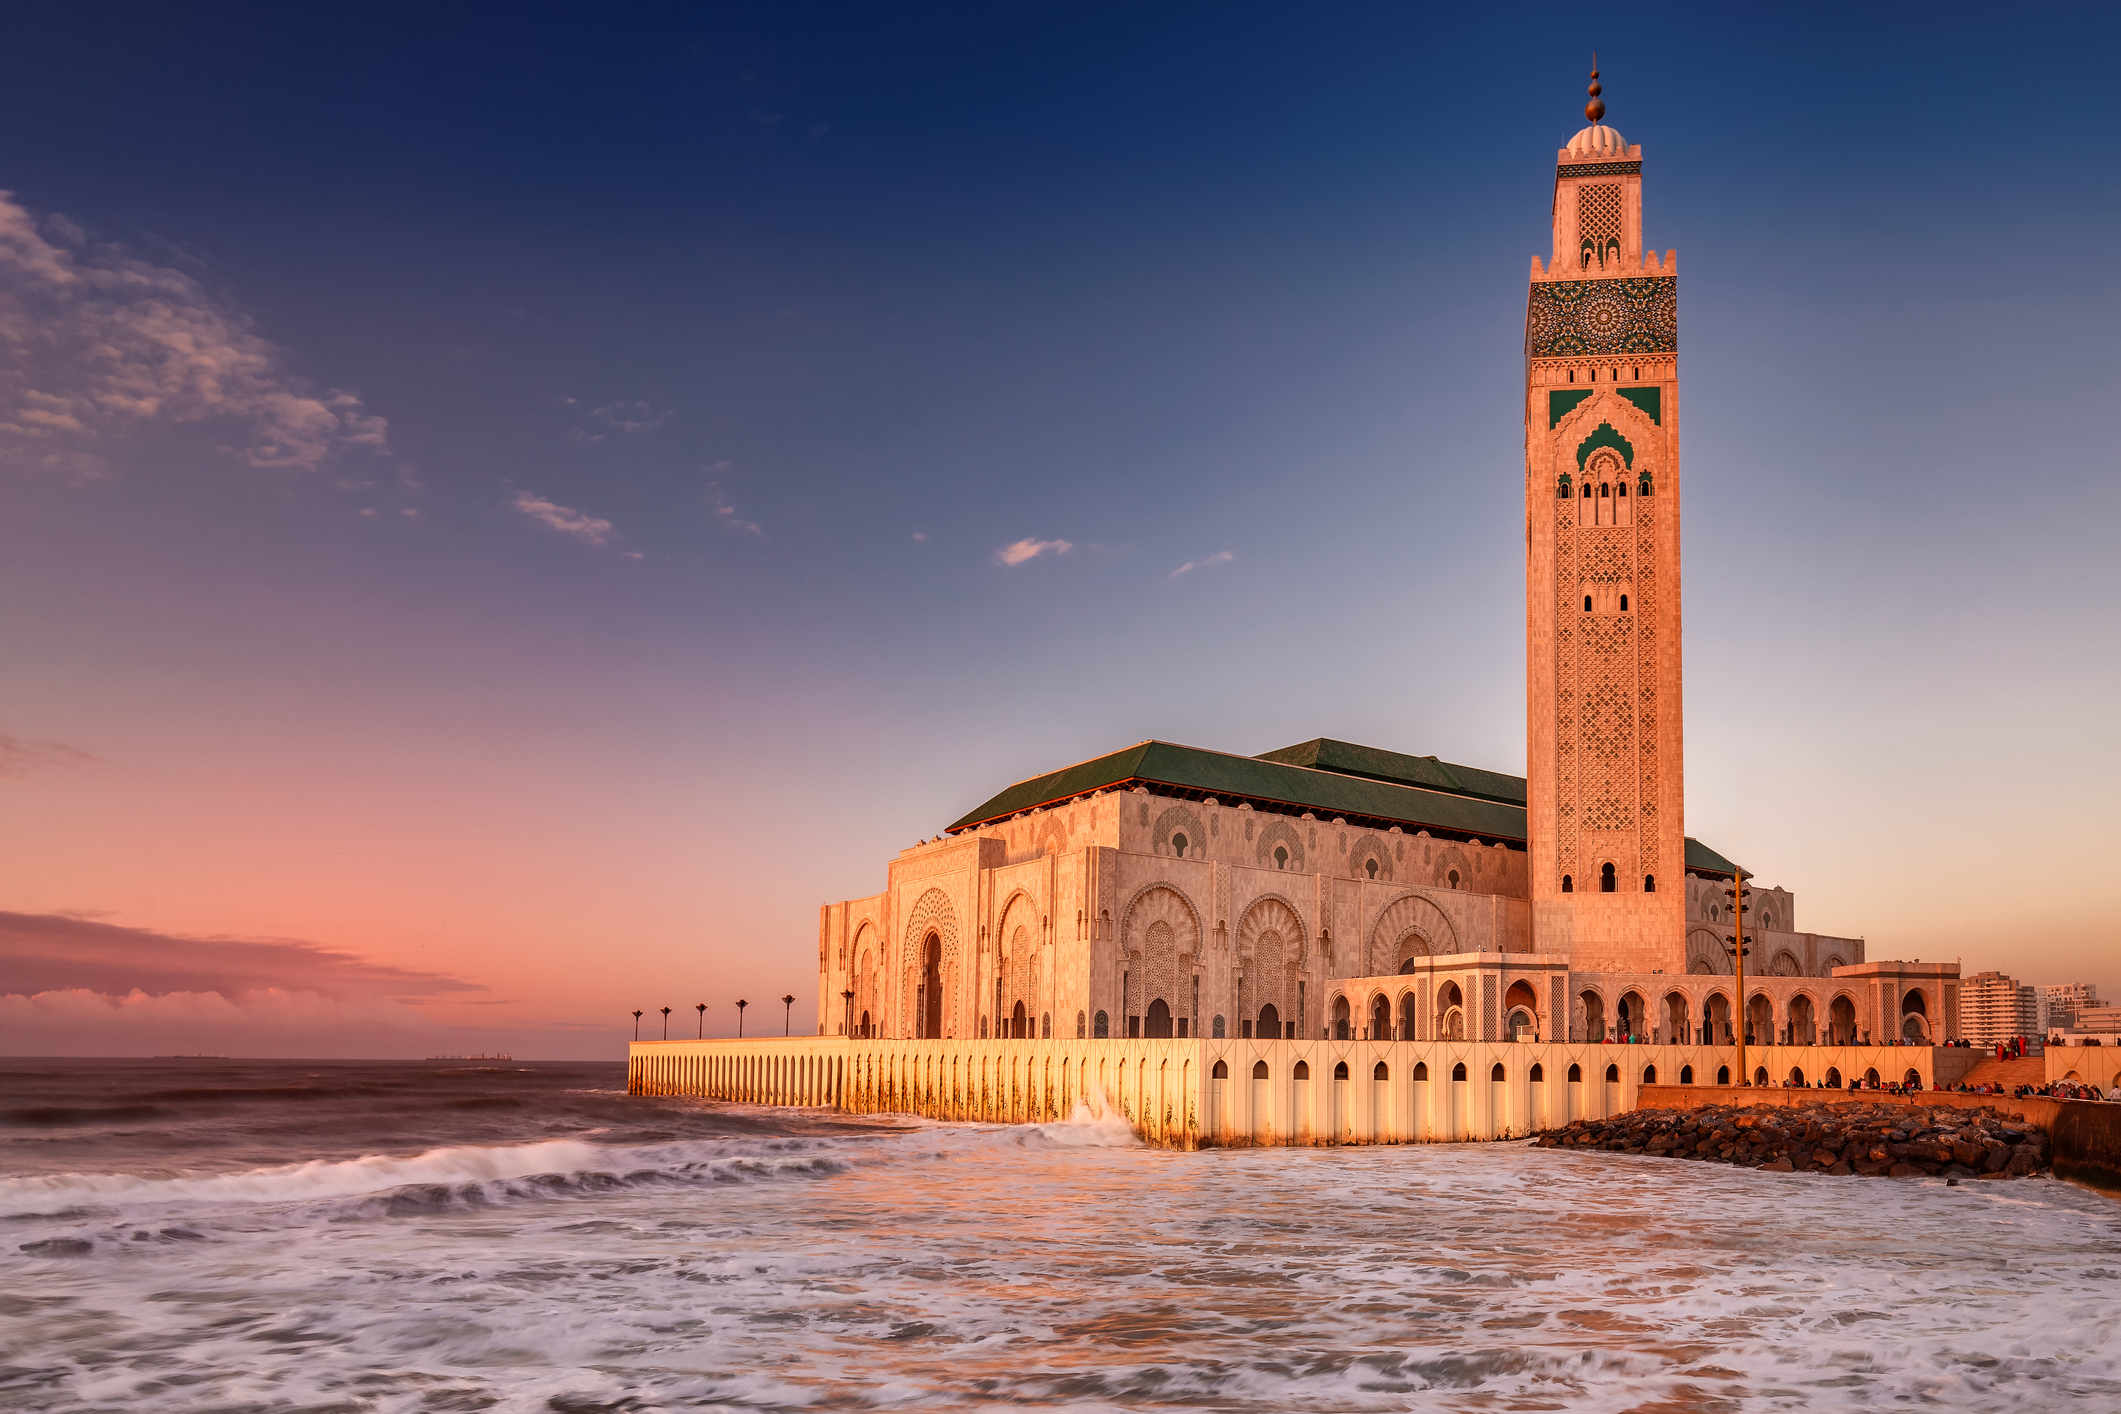 Касабланка, Мароко<br />
Тази популярна в миналото дестинация, отново привлича все повече туристи. Тук се преплитат различни културни влияния, които правят визията на града уникална. Любителите на архитектурните забележителности, ще бъдат очаровани.